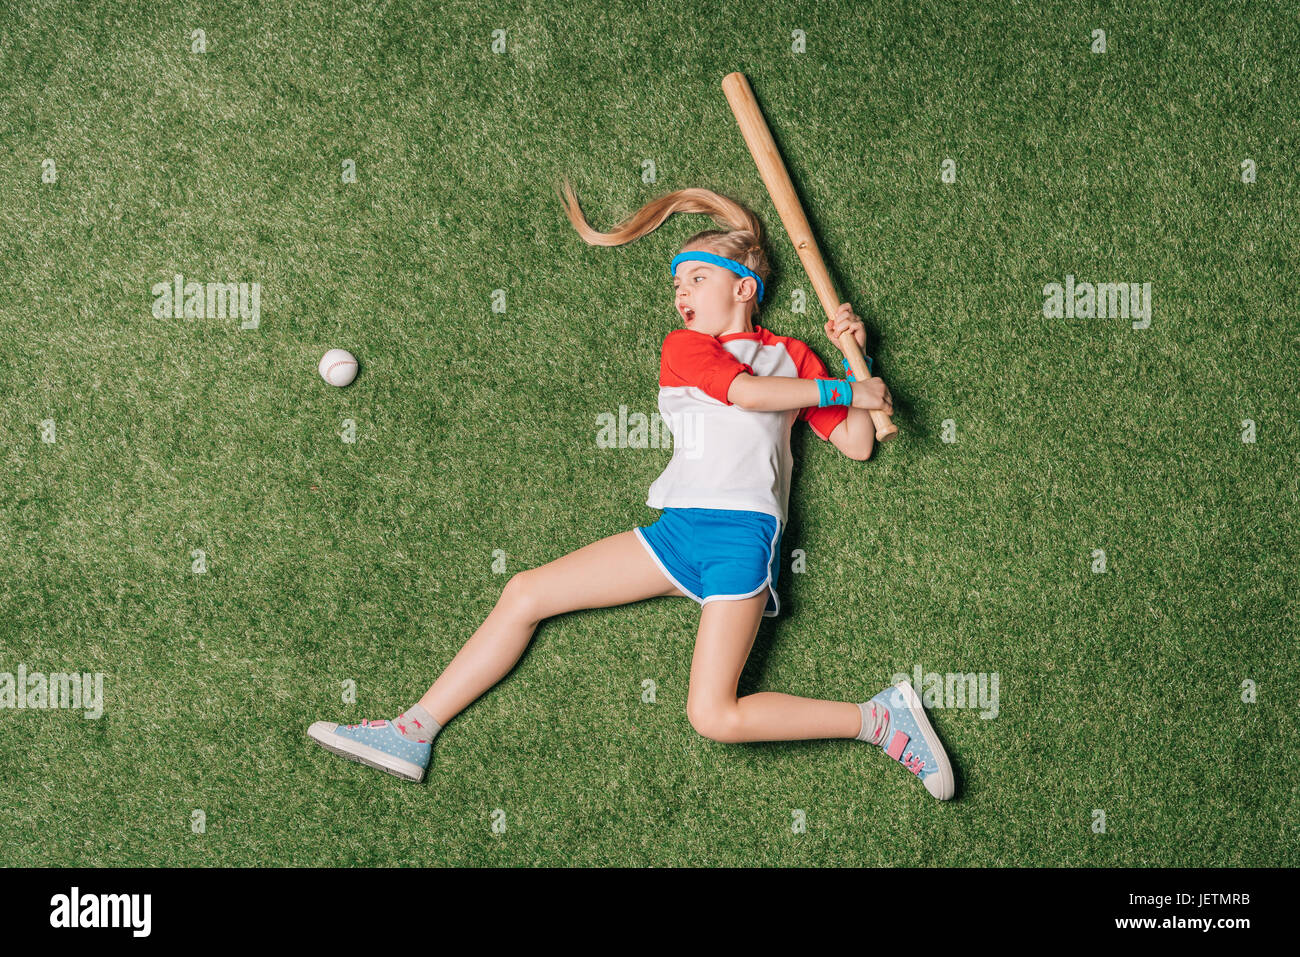 Vue de dessus de petite fille prétendant jouer au baseball sur l'herbe, l'athlétisme concept Banque D'Images